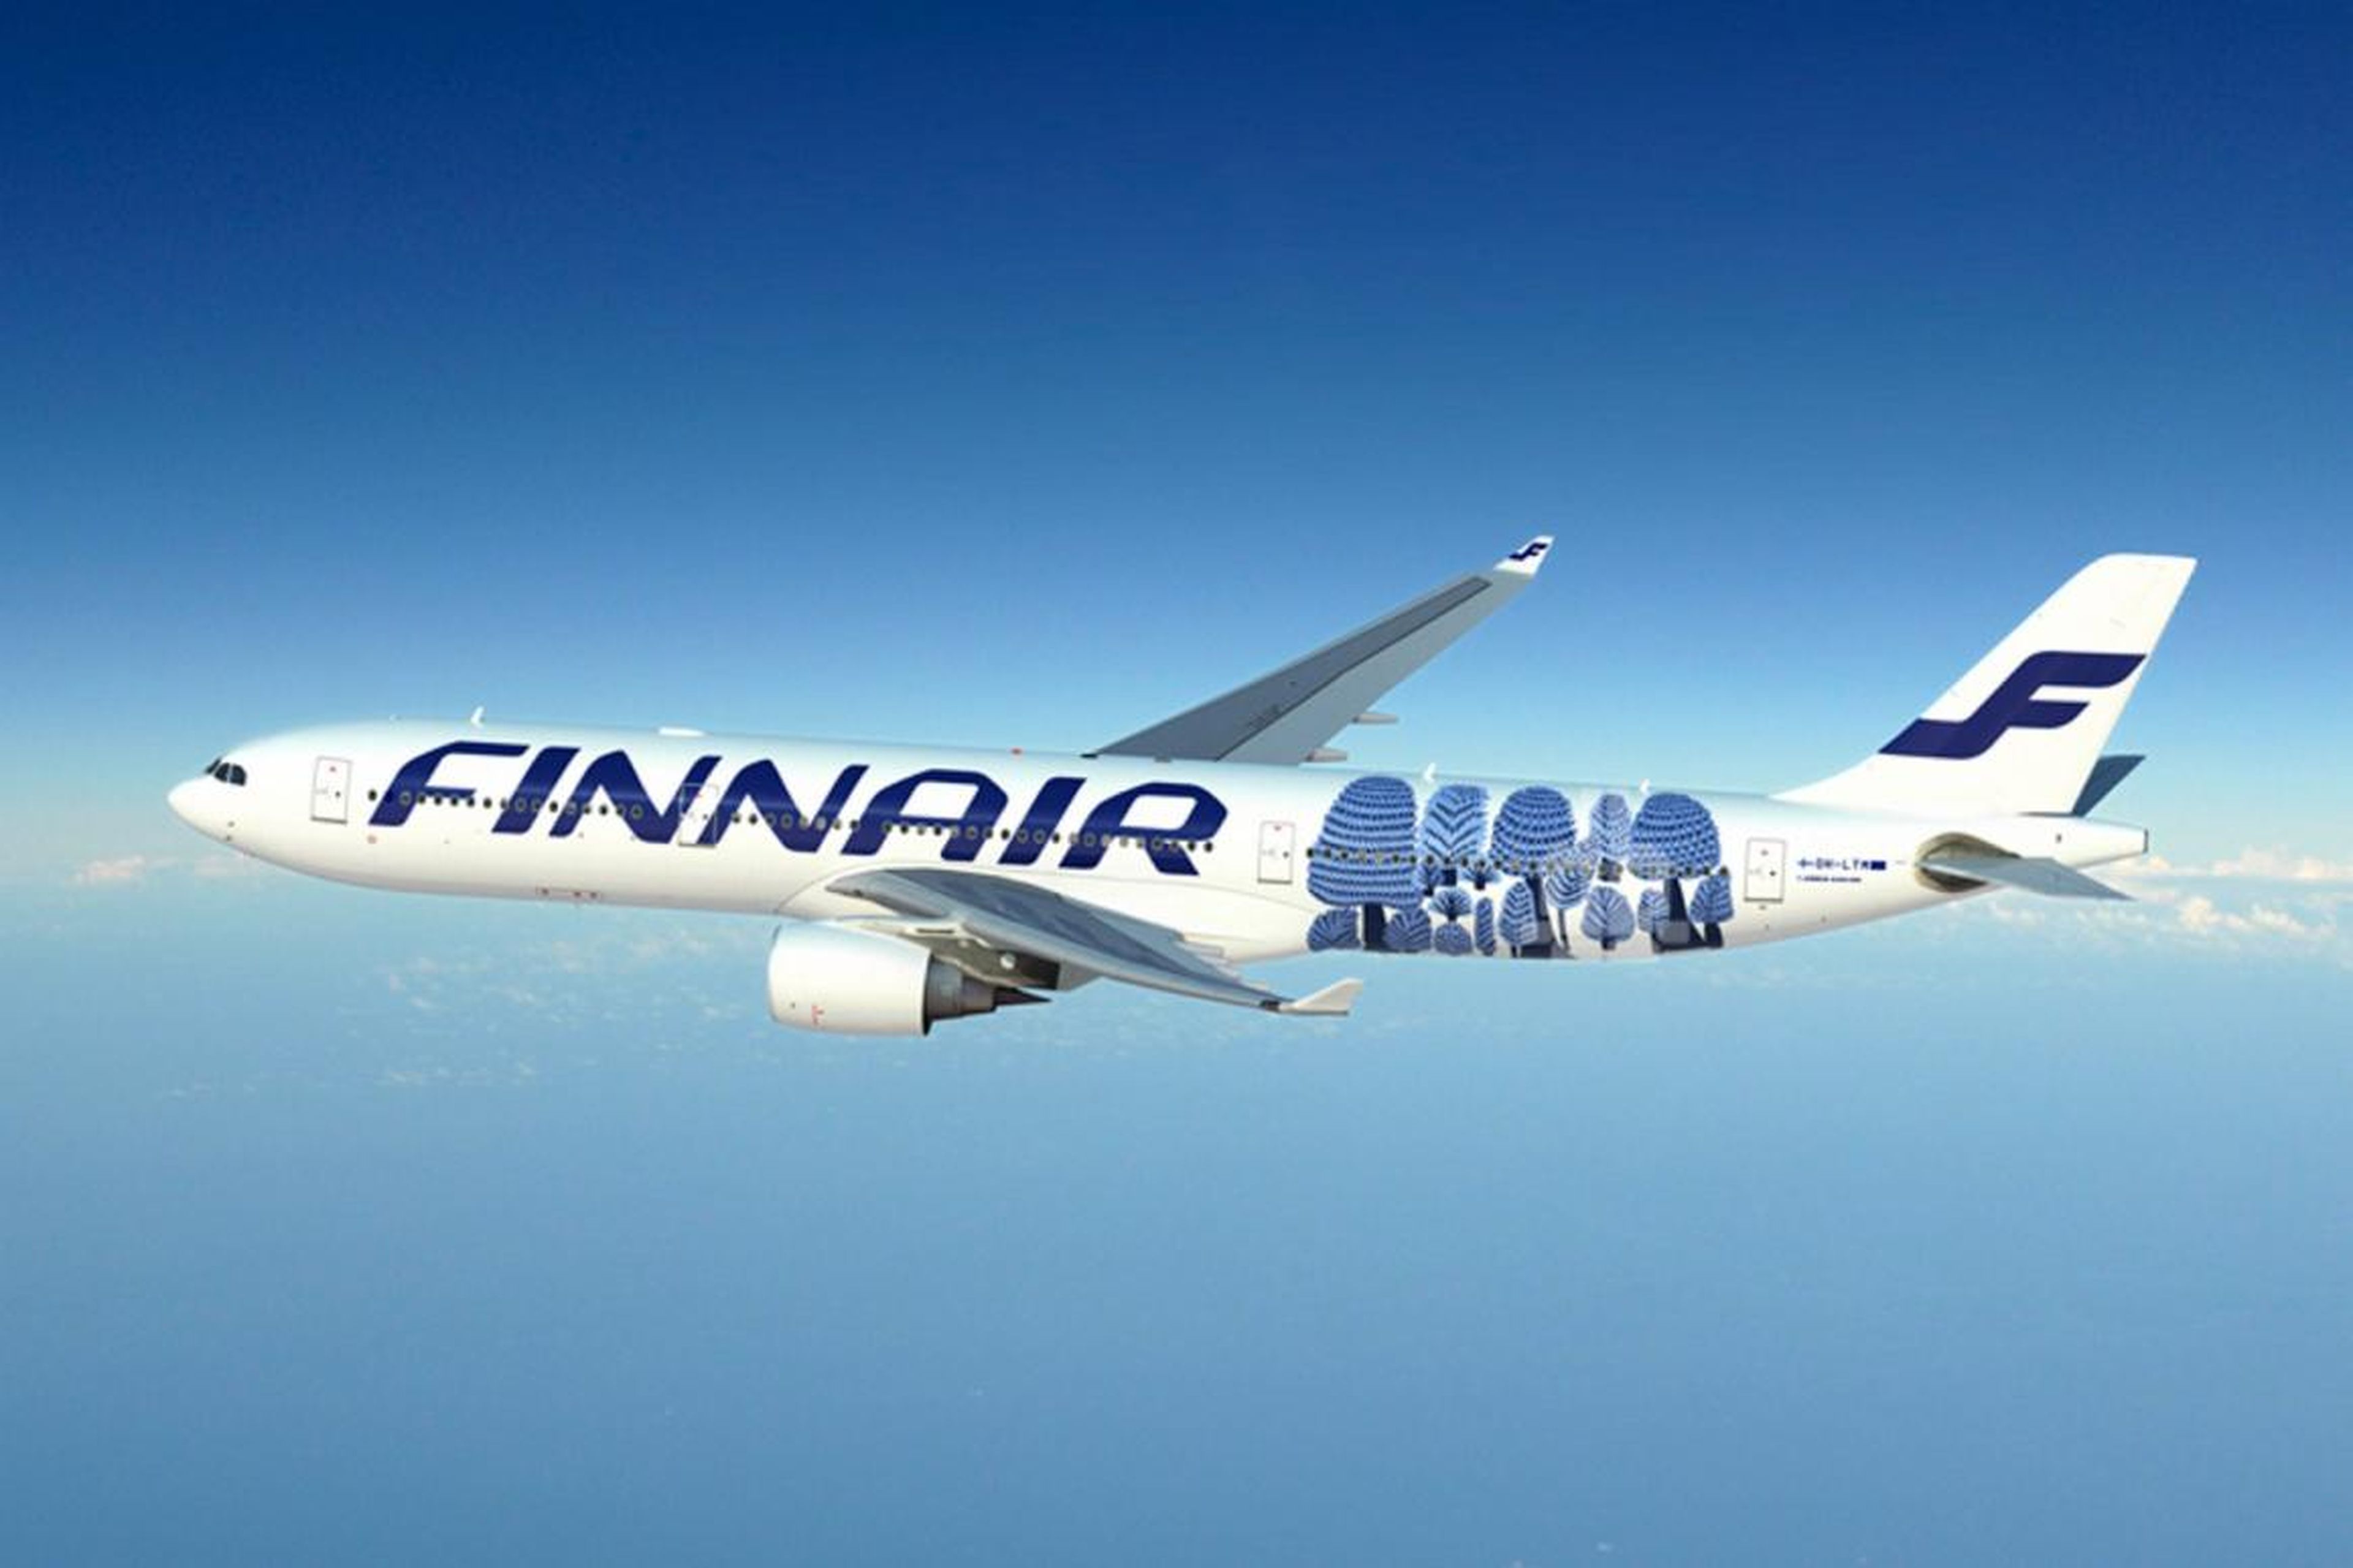 11. Finnair